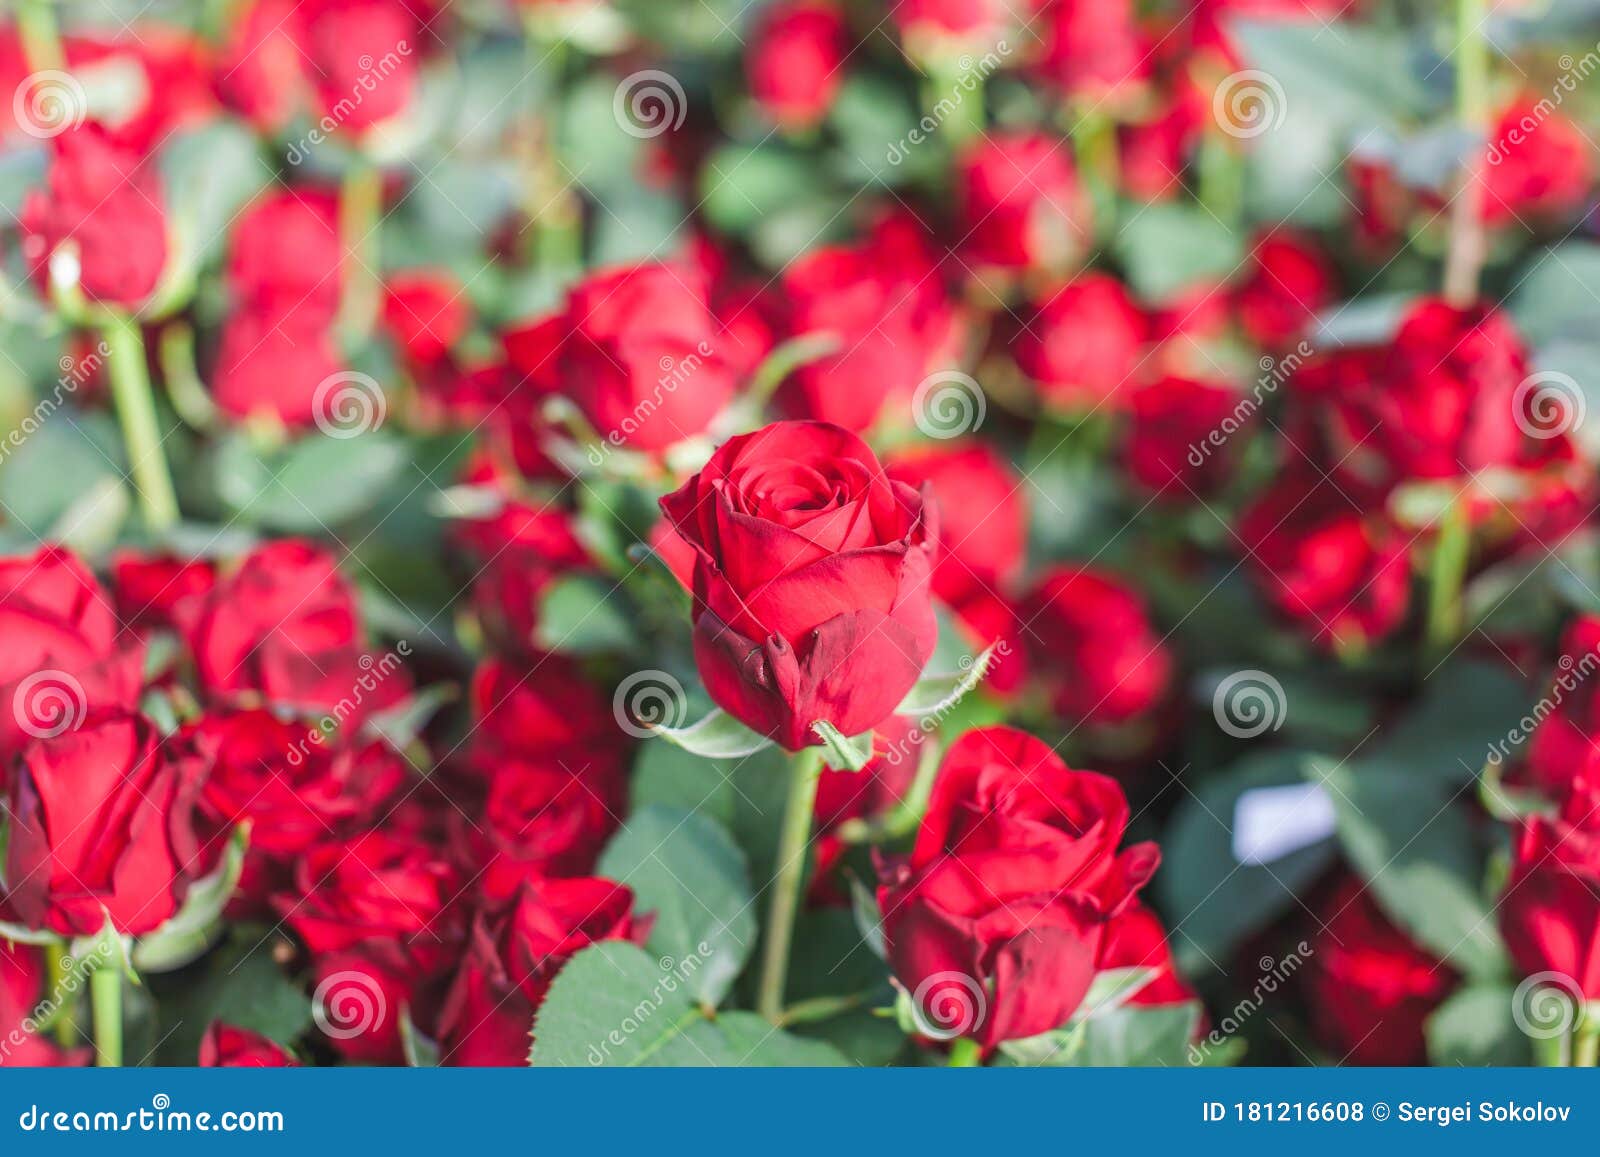 Flores Rojas De Naomi Rosa Variedad En Un Arbusto Foto de archivo - Imagen  de libre, feliz: 181216608